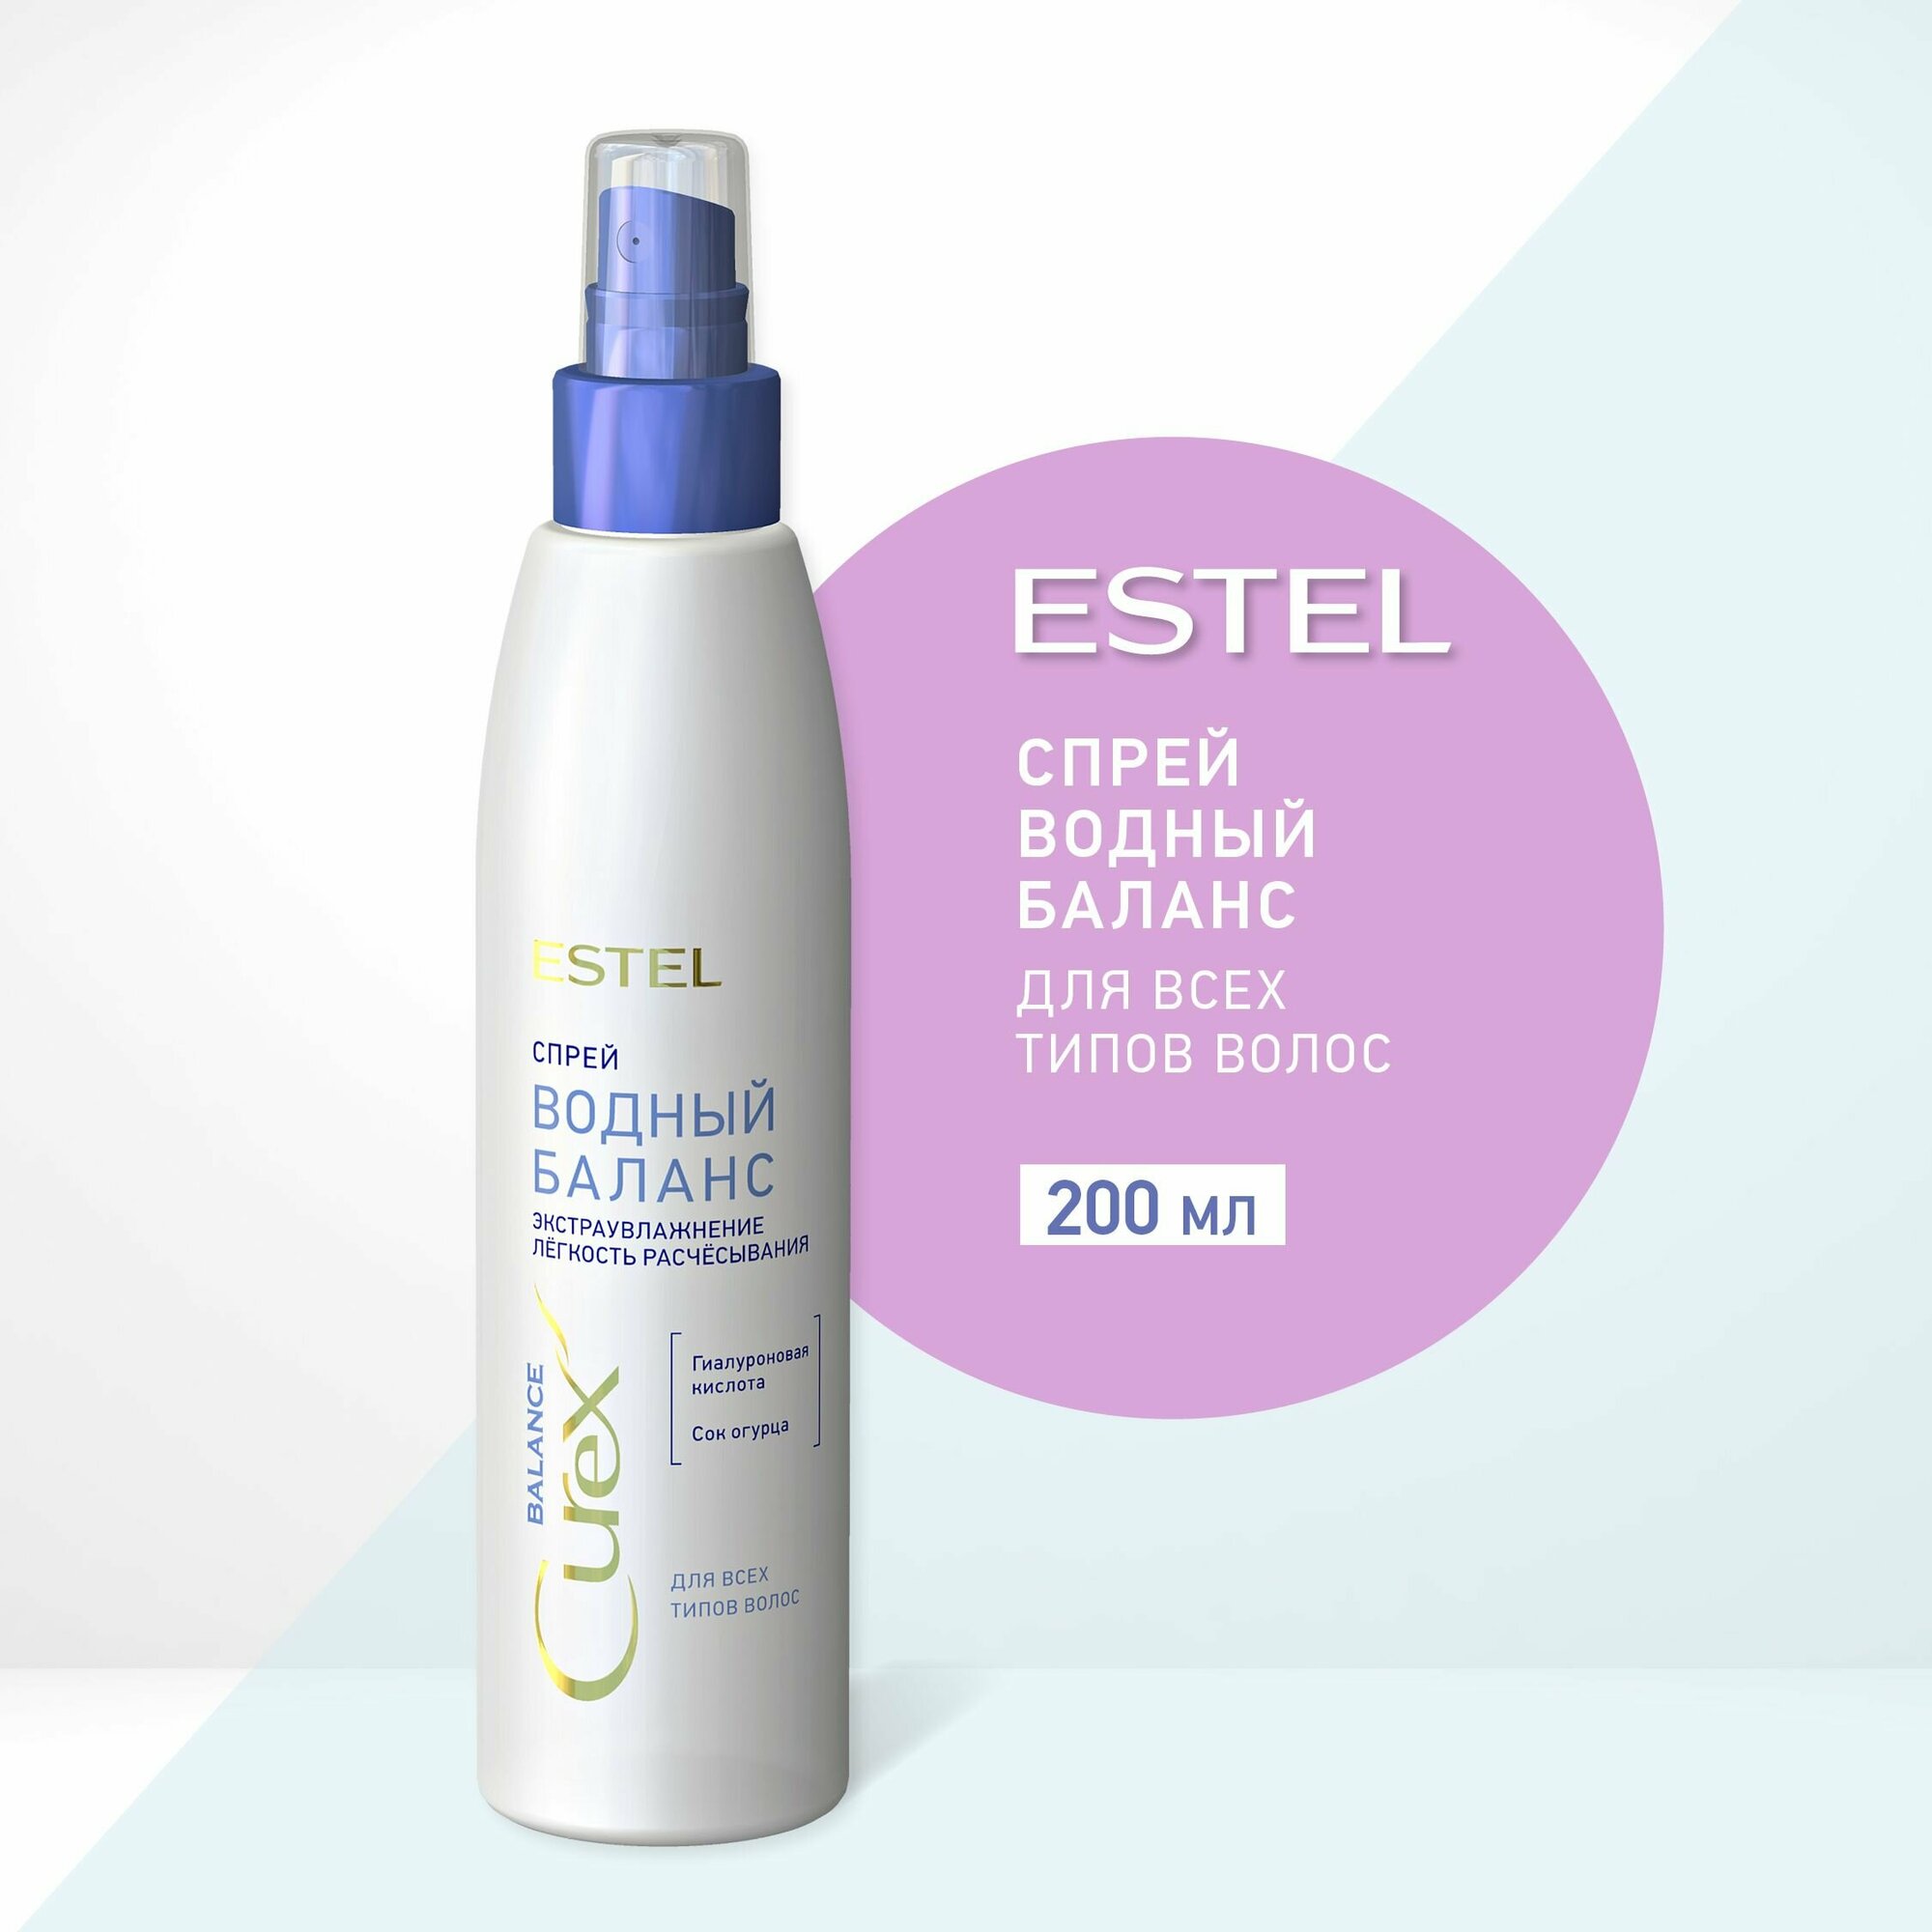 ESTEL Curex AQUA BALANCE, Спрей Водный баланс для всех типов волос (200 мл)